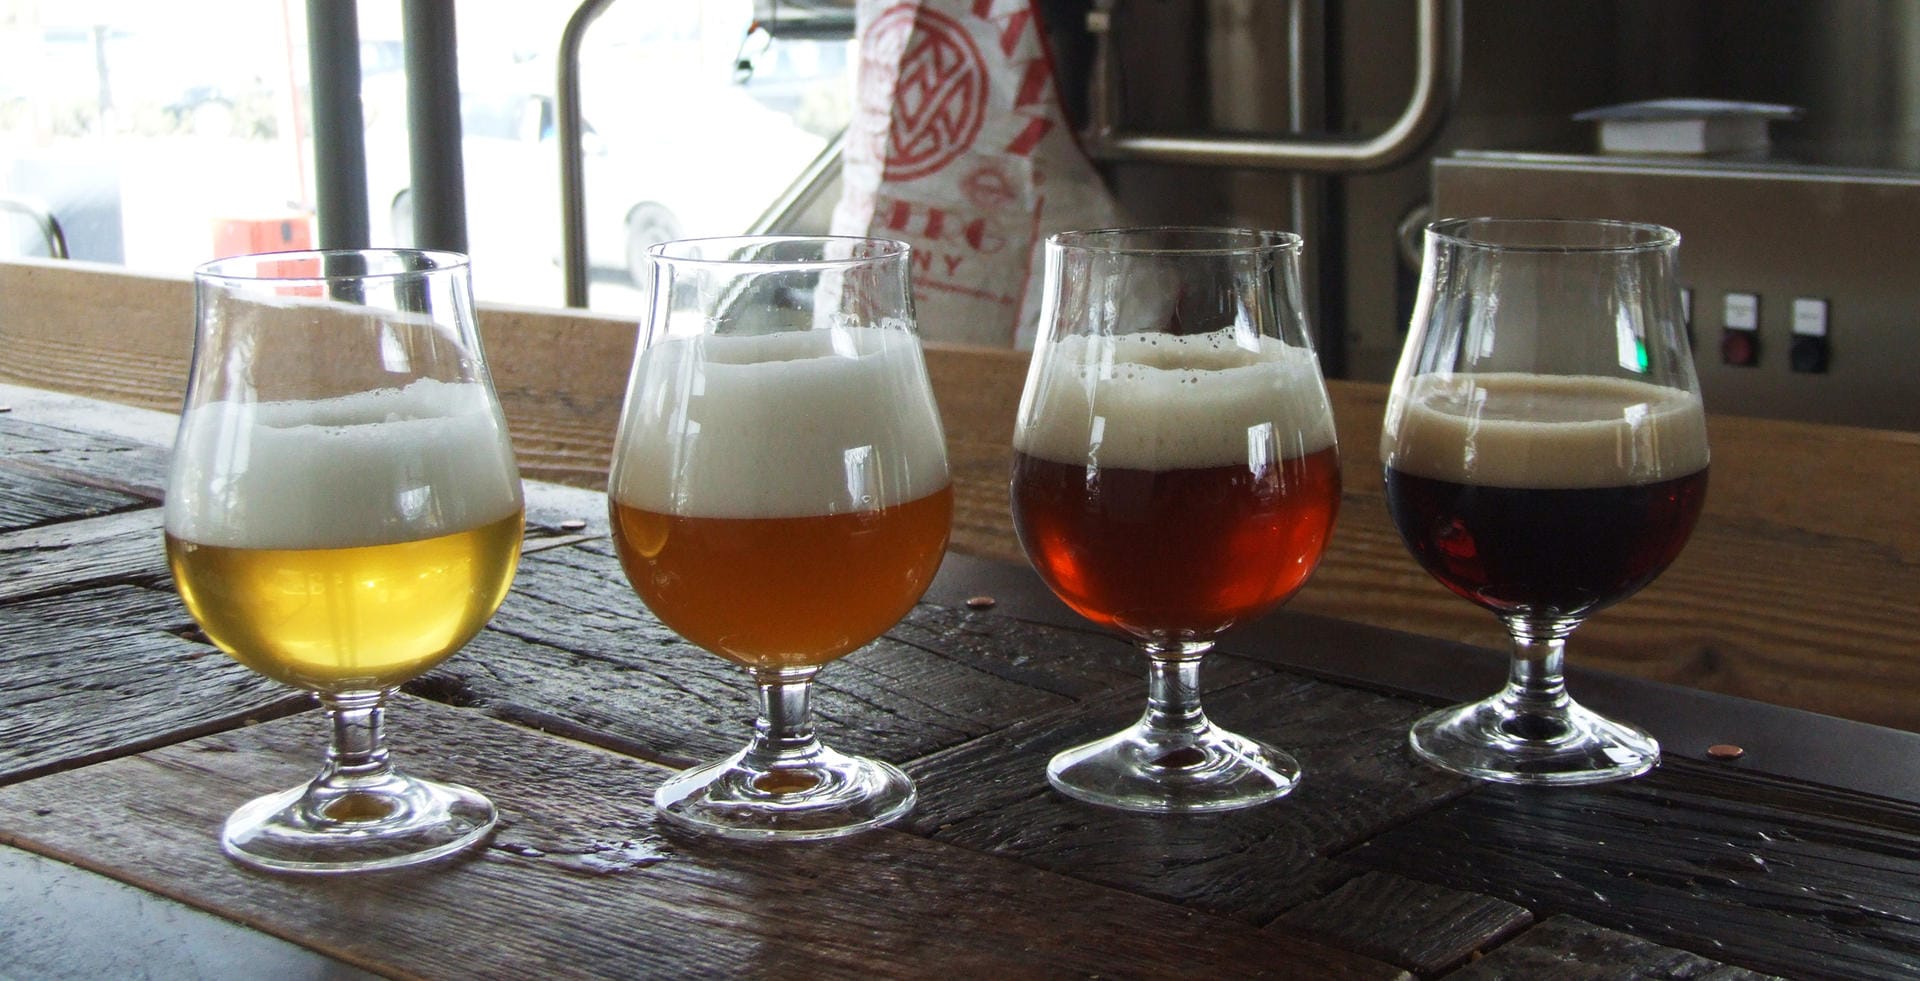 Das Bier wird nach Bayerischem Reinheitsgebot gebraut.